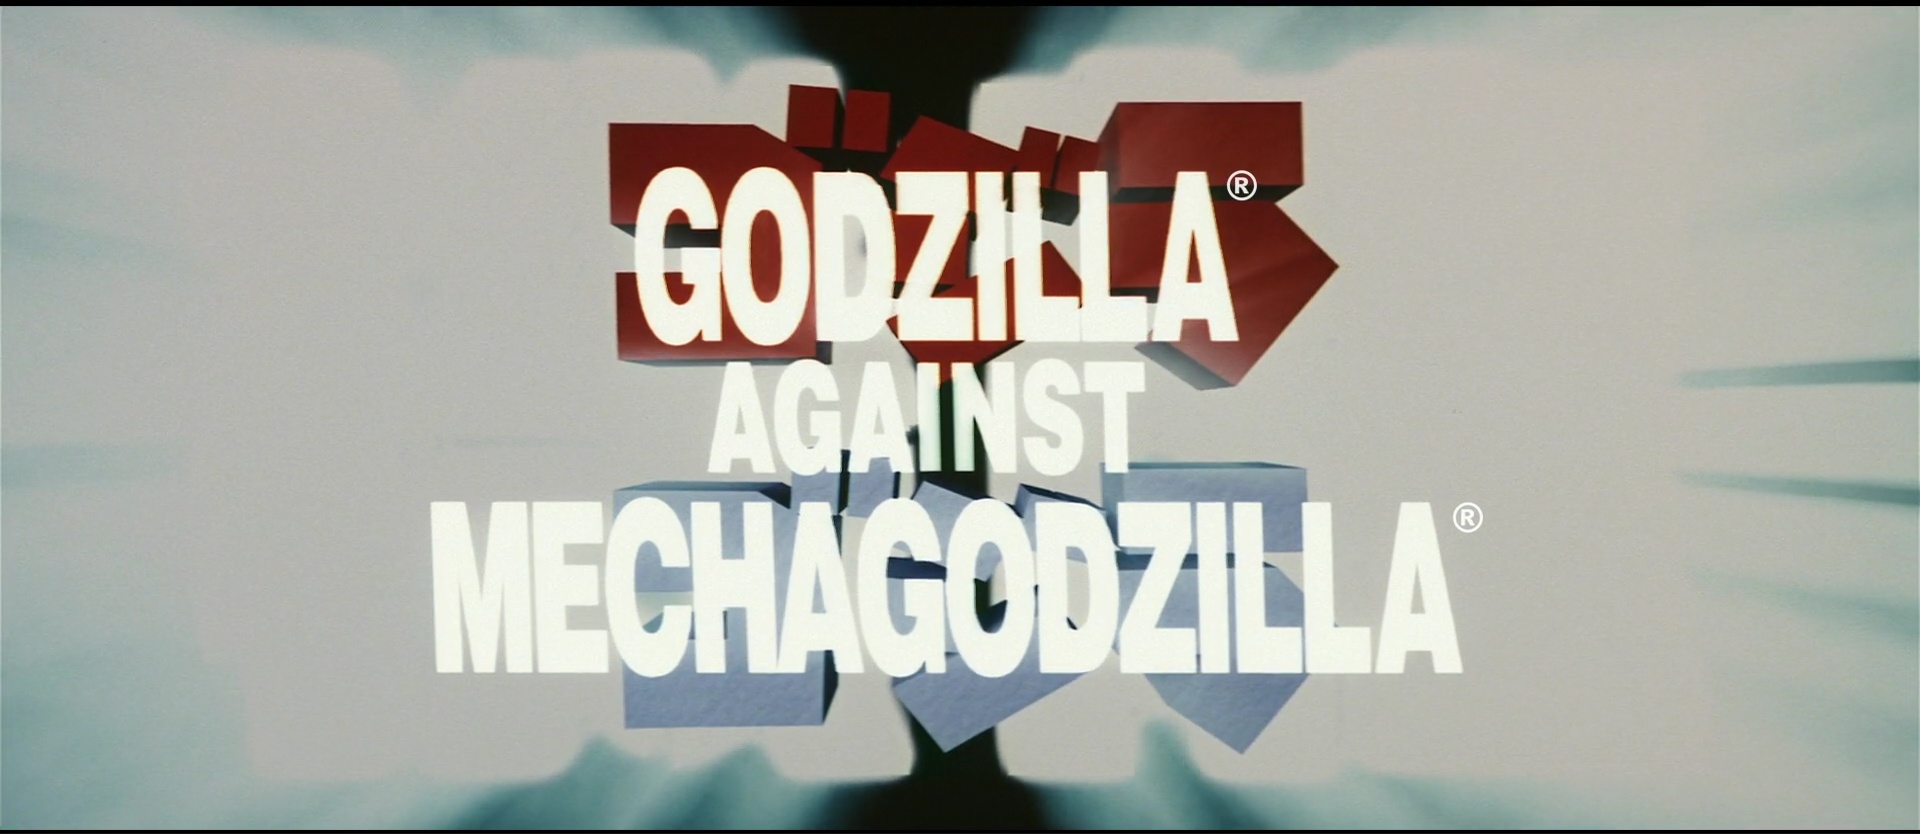 GODZILLA AGAINST MECHAGODZILLA (ゴジラ×メカゴジラ) de Tezuka Masaaki (2002)